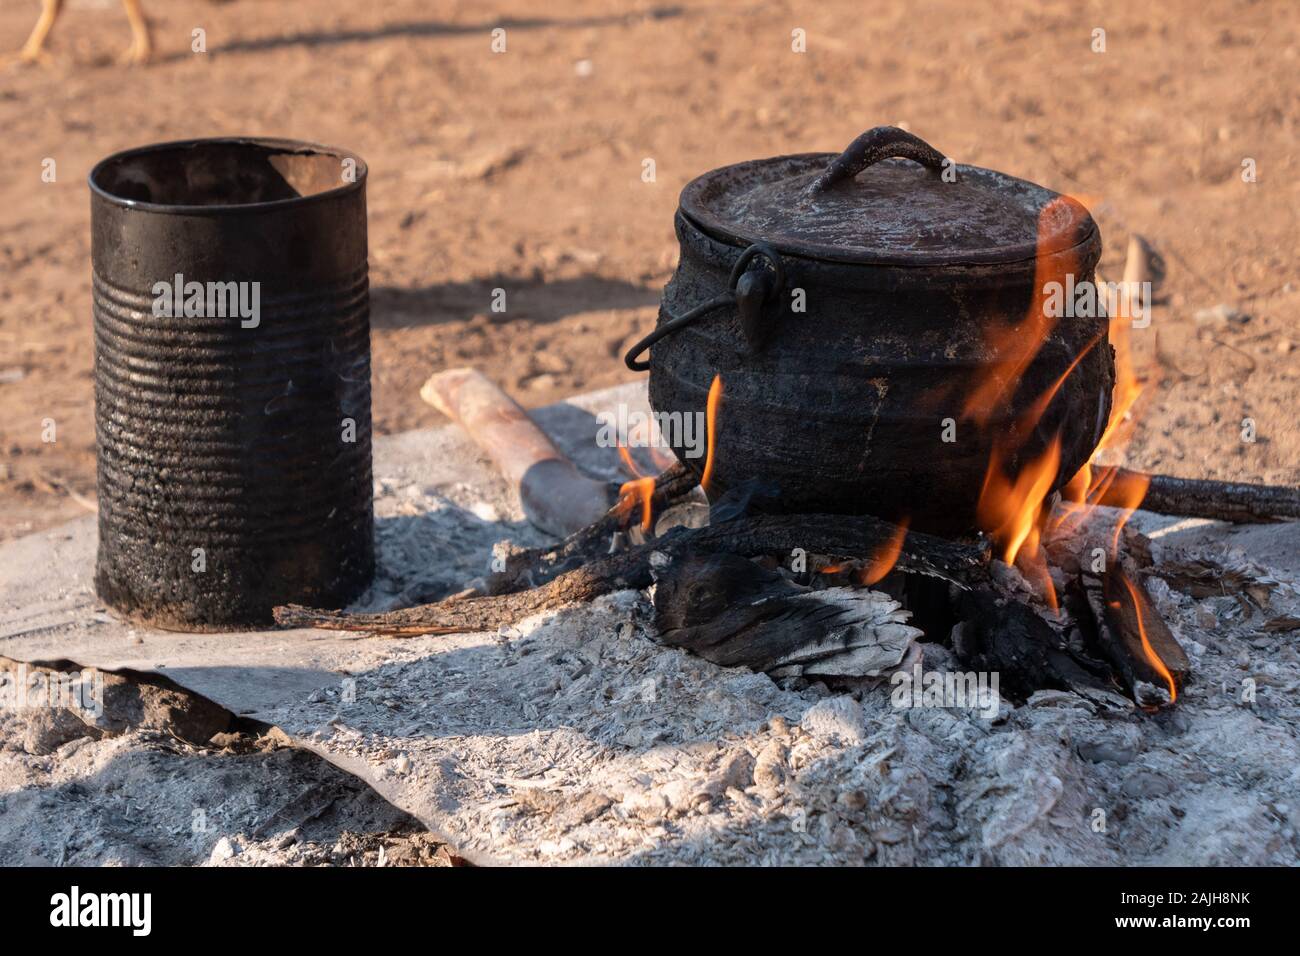 Vieux, peu d'étain et chaudron sur feu de base - les ustensiles de cuisine de la tribu Himba, Namibie, Afrique Banque D'Images